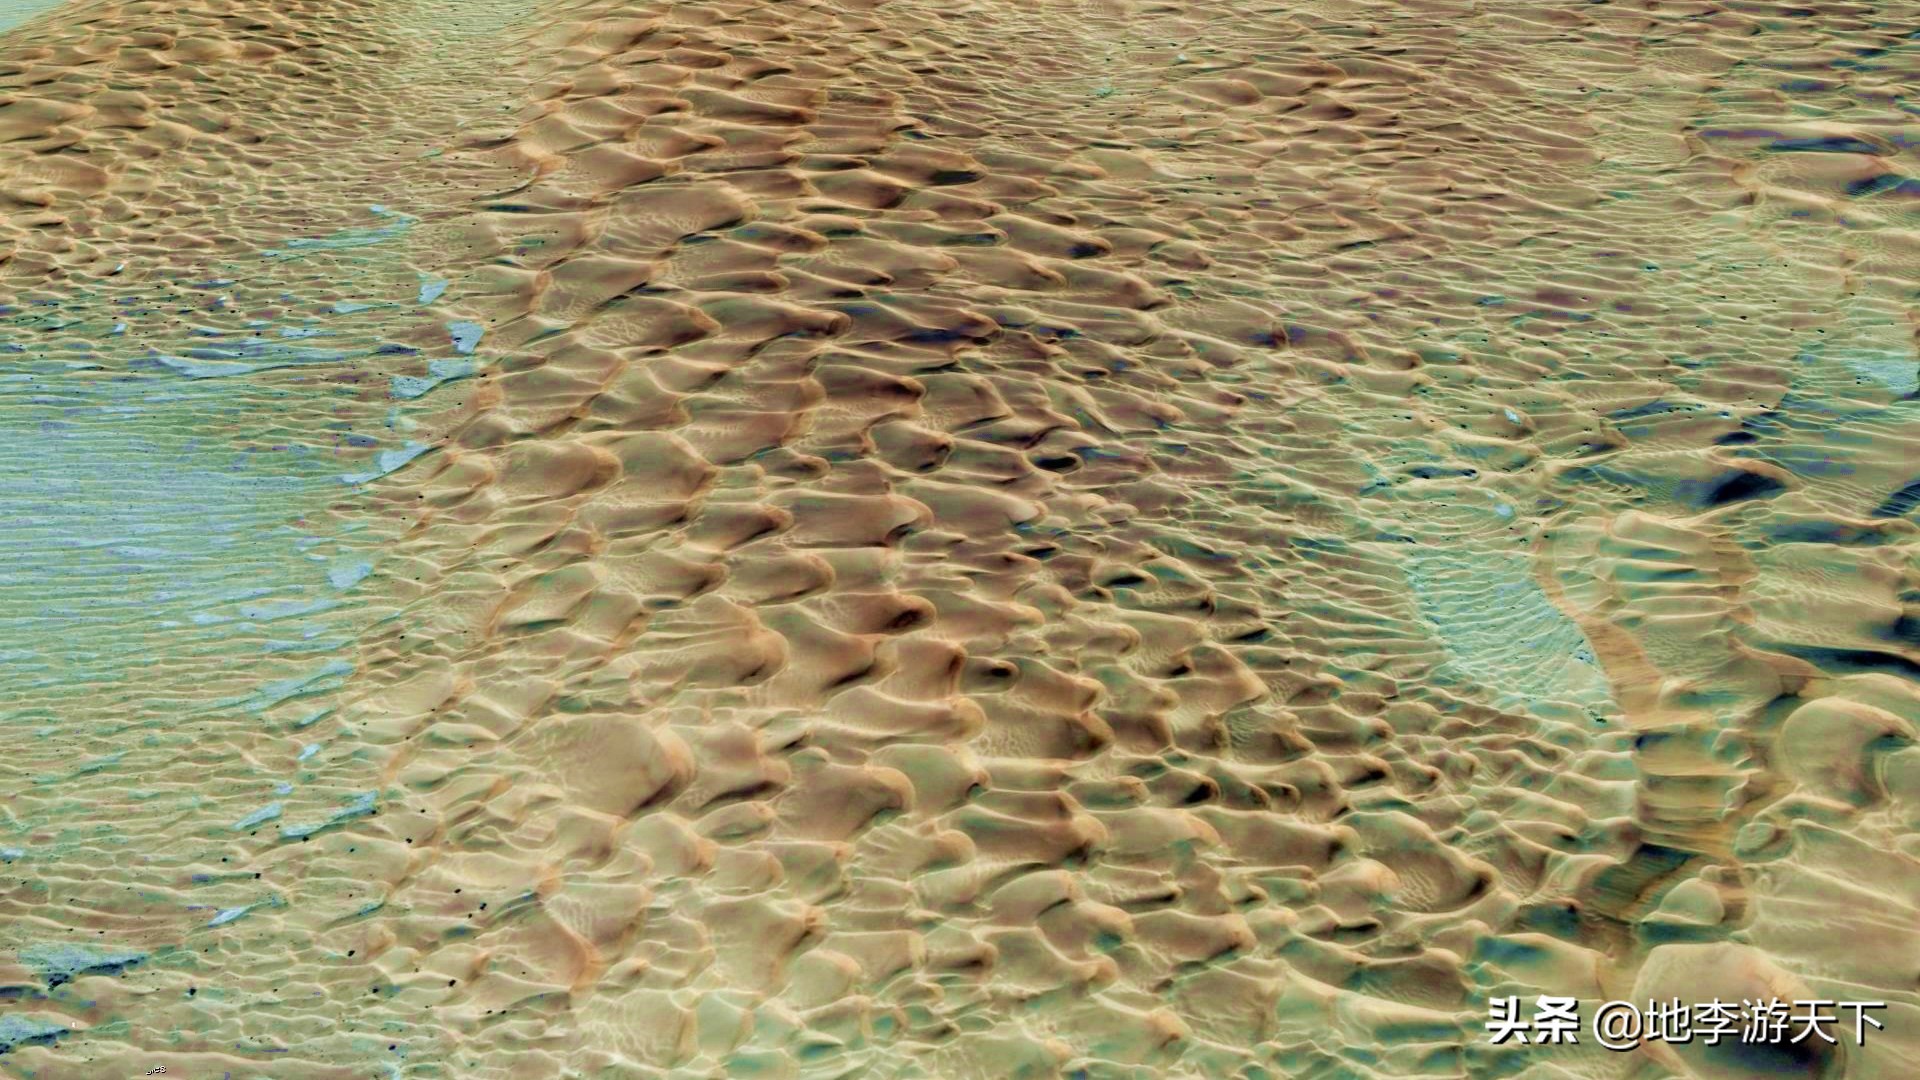 蜂窝状沙丘是沙漠中常见的一种沙丘类型,这一片沙丘群中,最小的仅数米